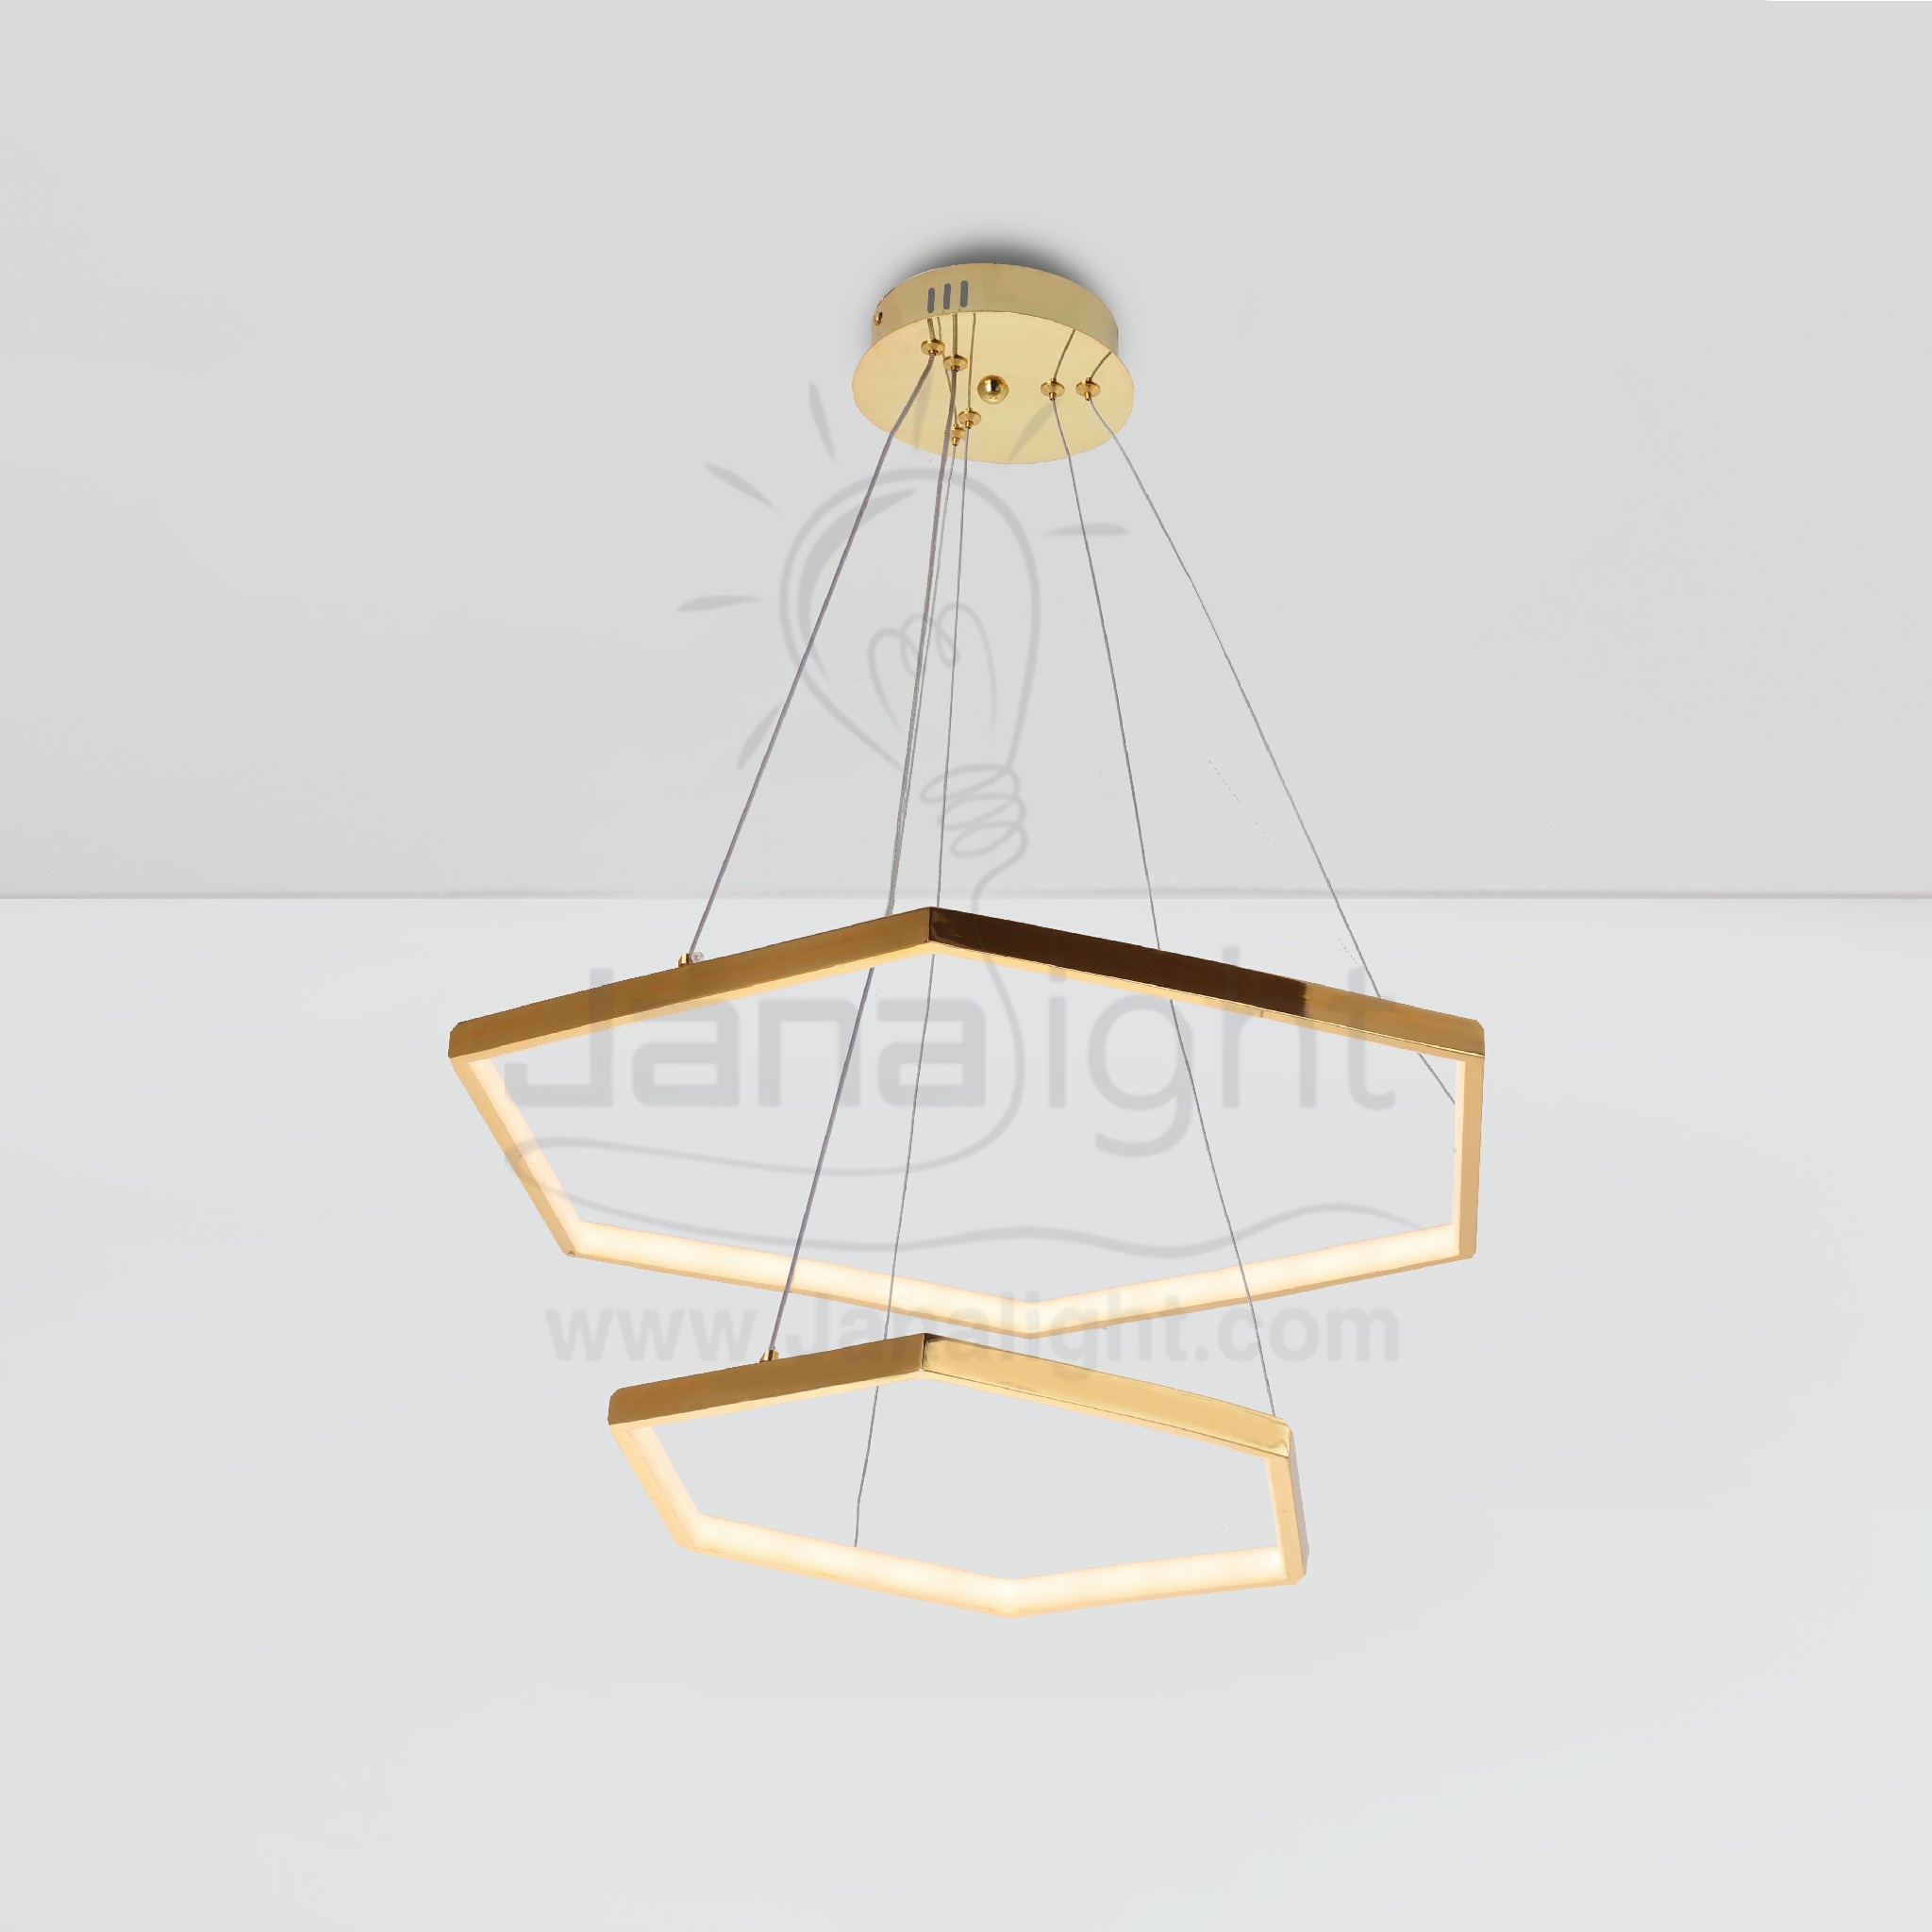 دلاية ليد حلقات ثنائية شكل سداسي اطار ليد داخلي Modern Luminaire Hanglamp Ceiling Pendant Light Led Chandeliers Gold 2 Hexagon